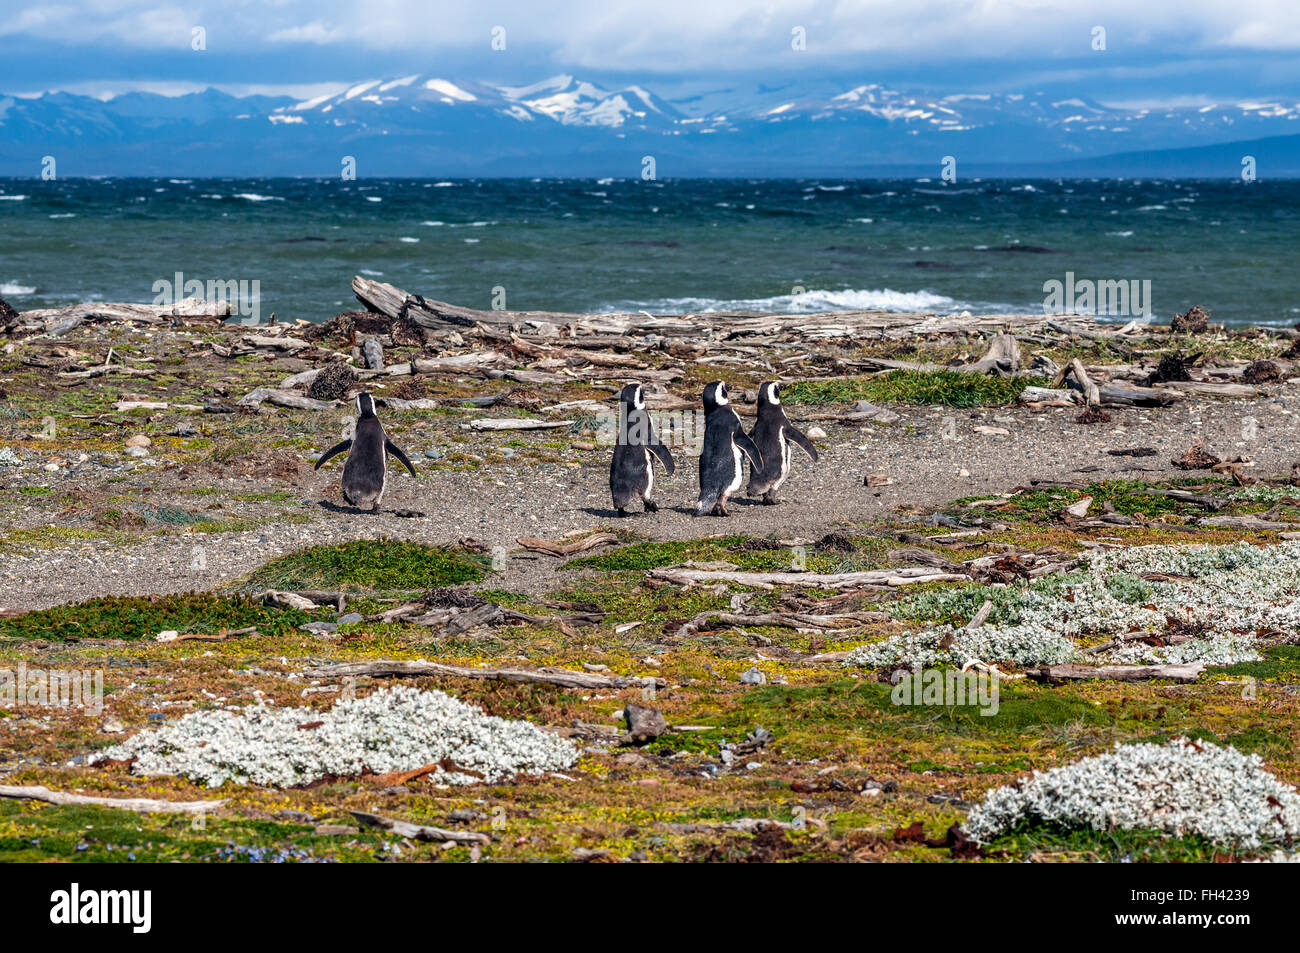 De nombreux manchots de Magellan en milieu naturel sur Seno Otway colonie de pingouins près de Punta Arenas en Patagonie, Chili Banque D'Images